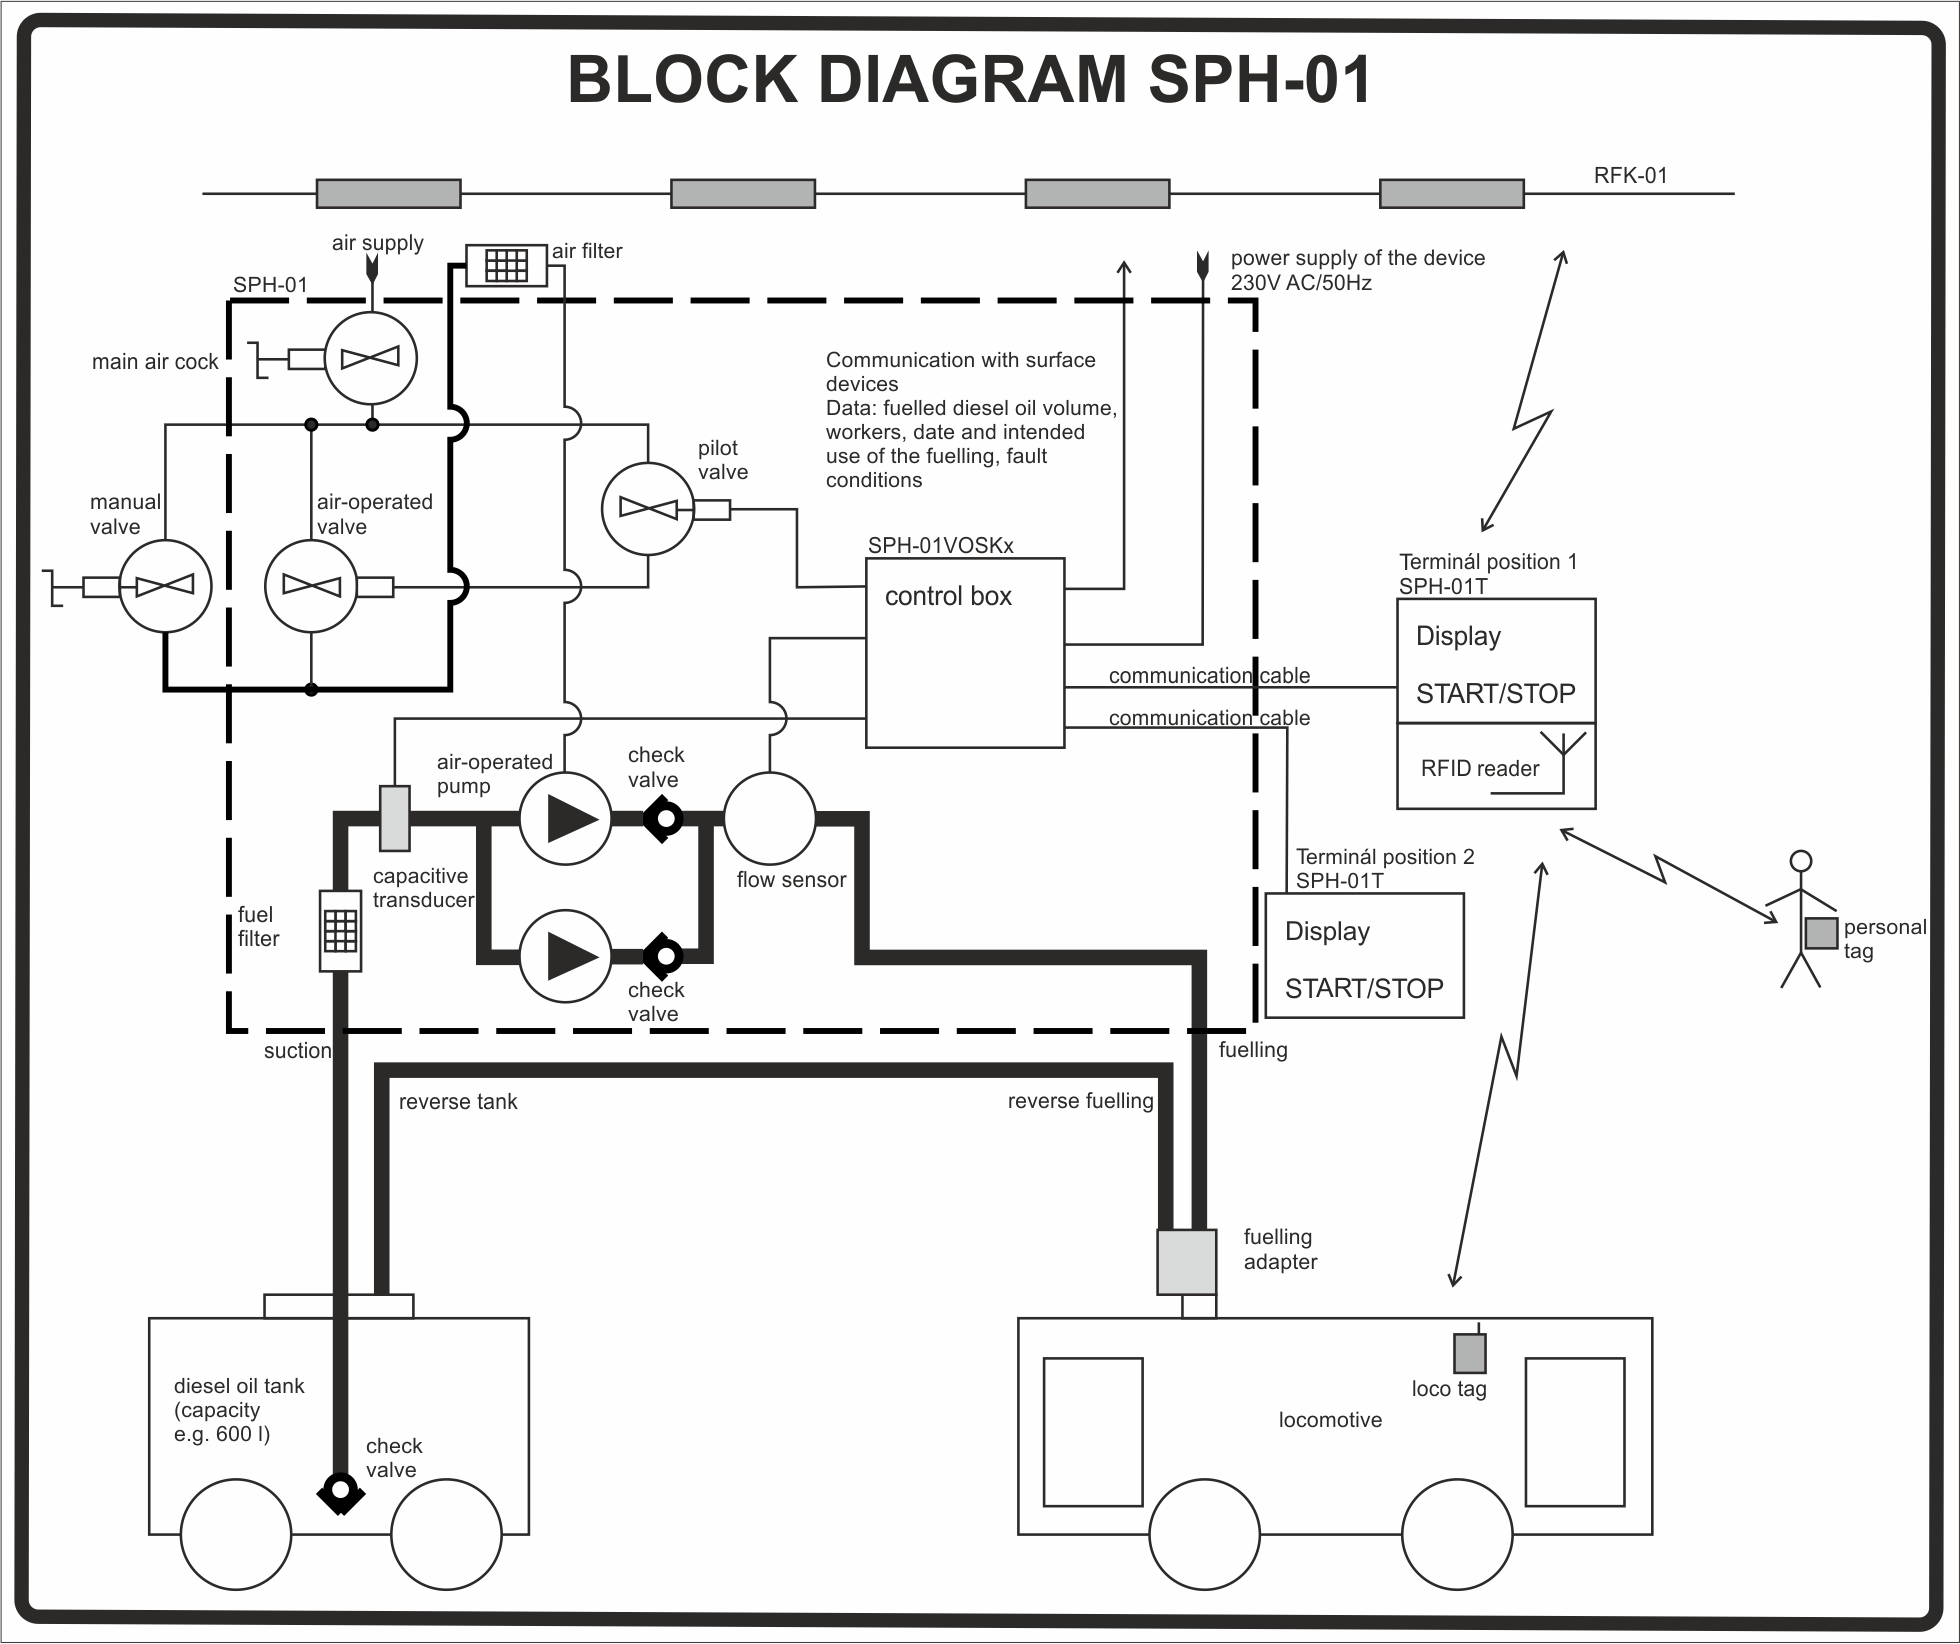 Block diagram SPH-01